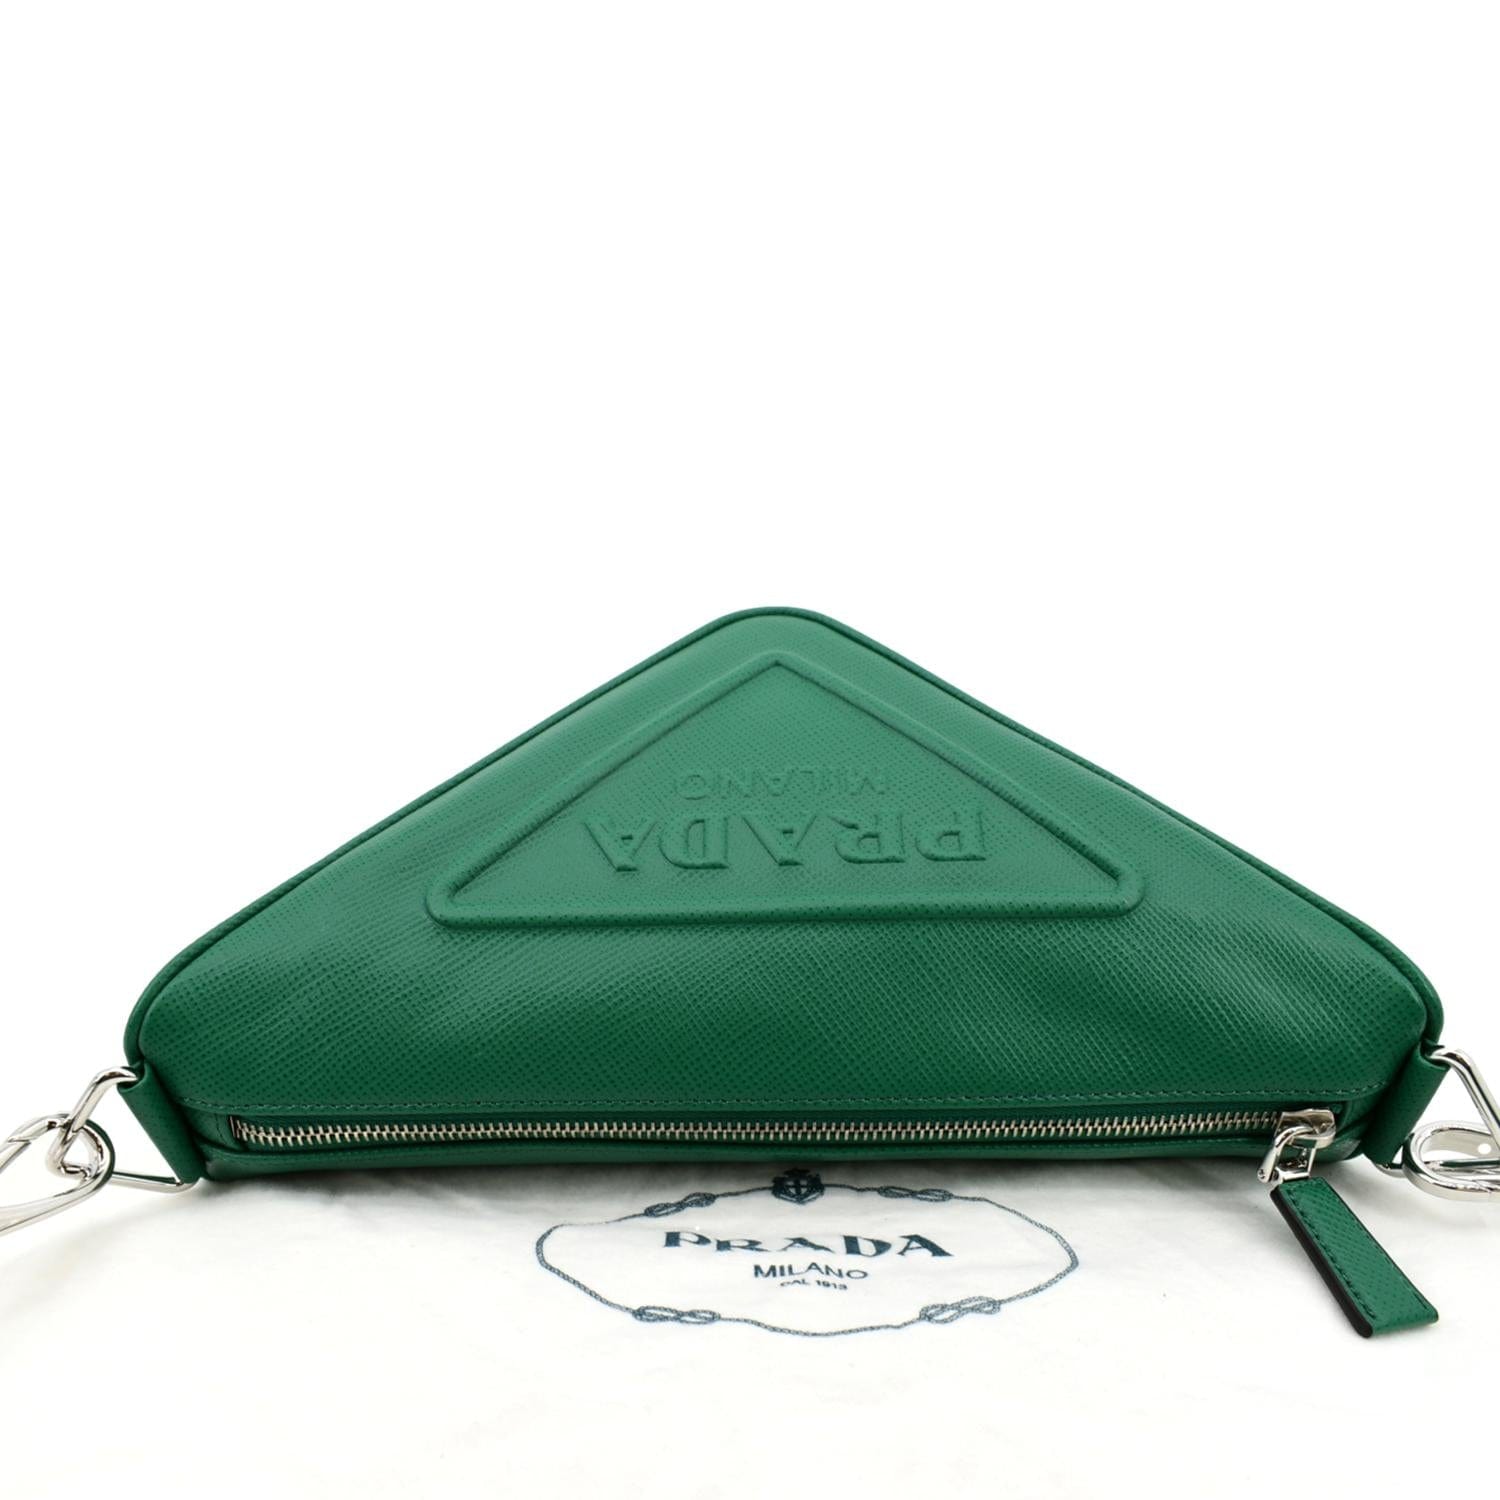 PRADA Triangle Saffiano Leather Shoulder Bag Green